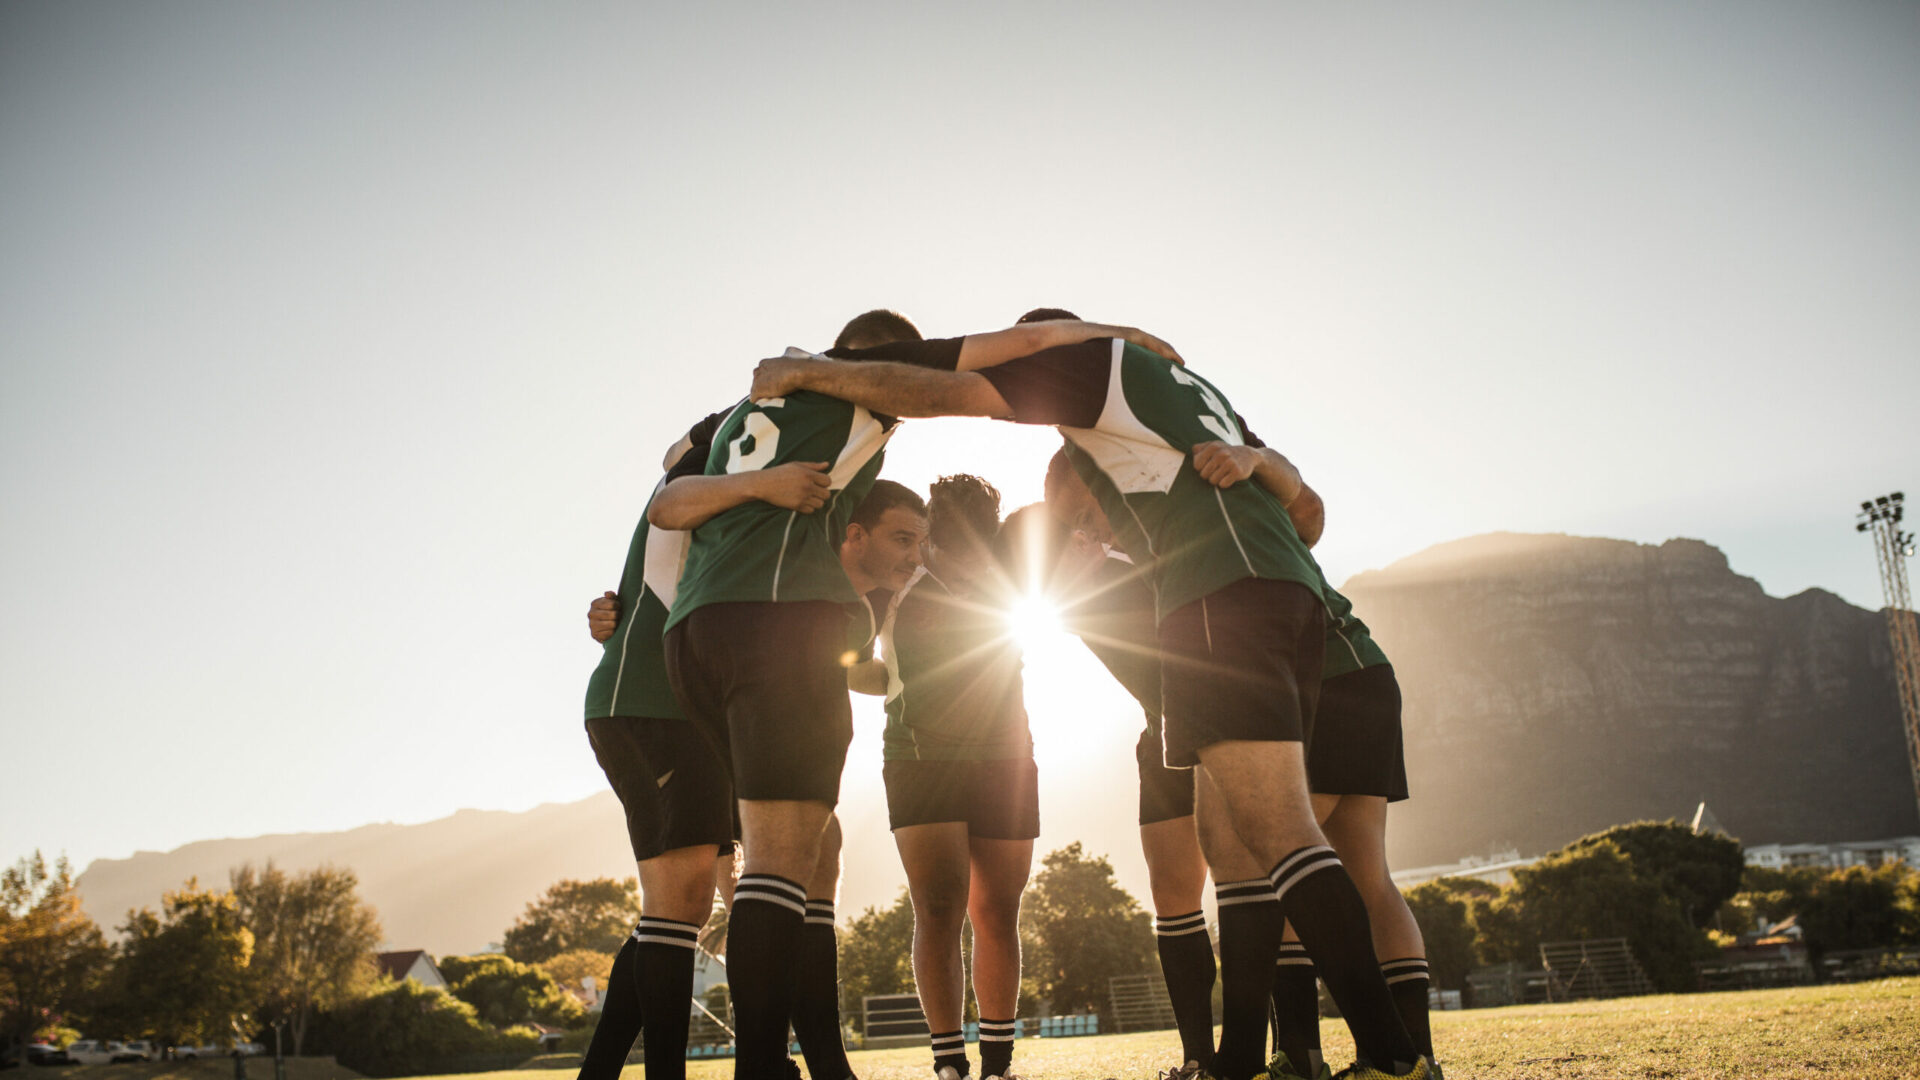 Image d'une équipe de rugby se tenant en cercle sur un terrain